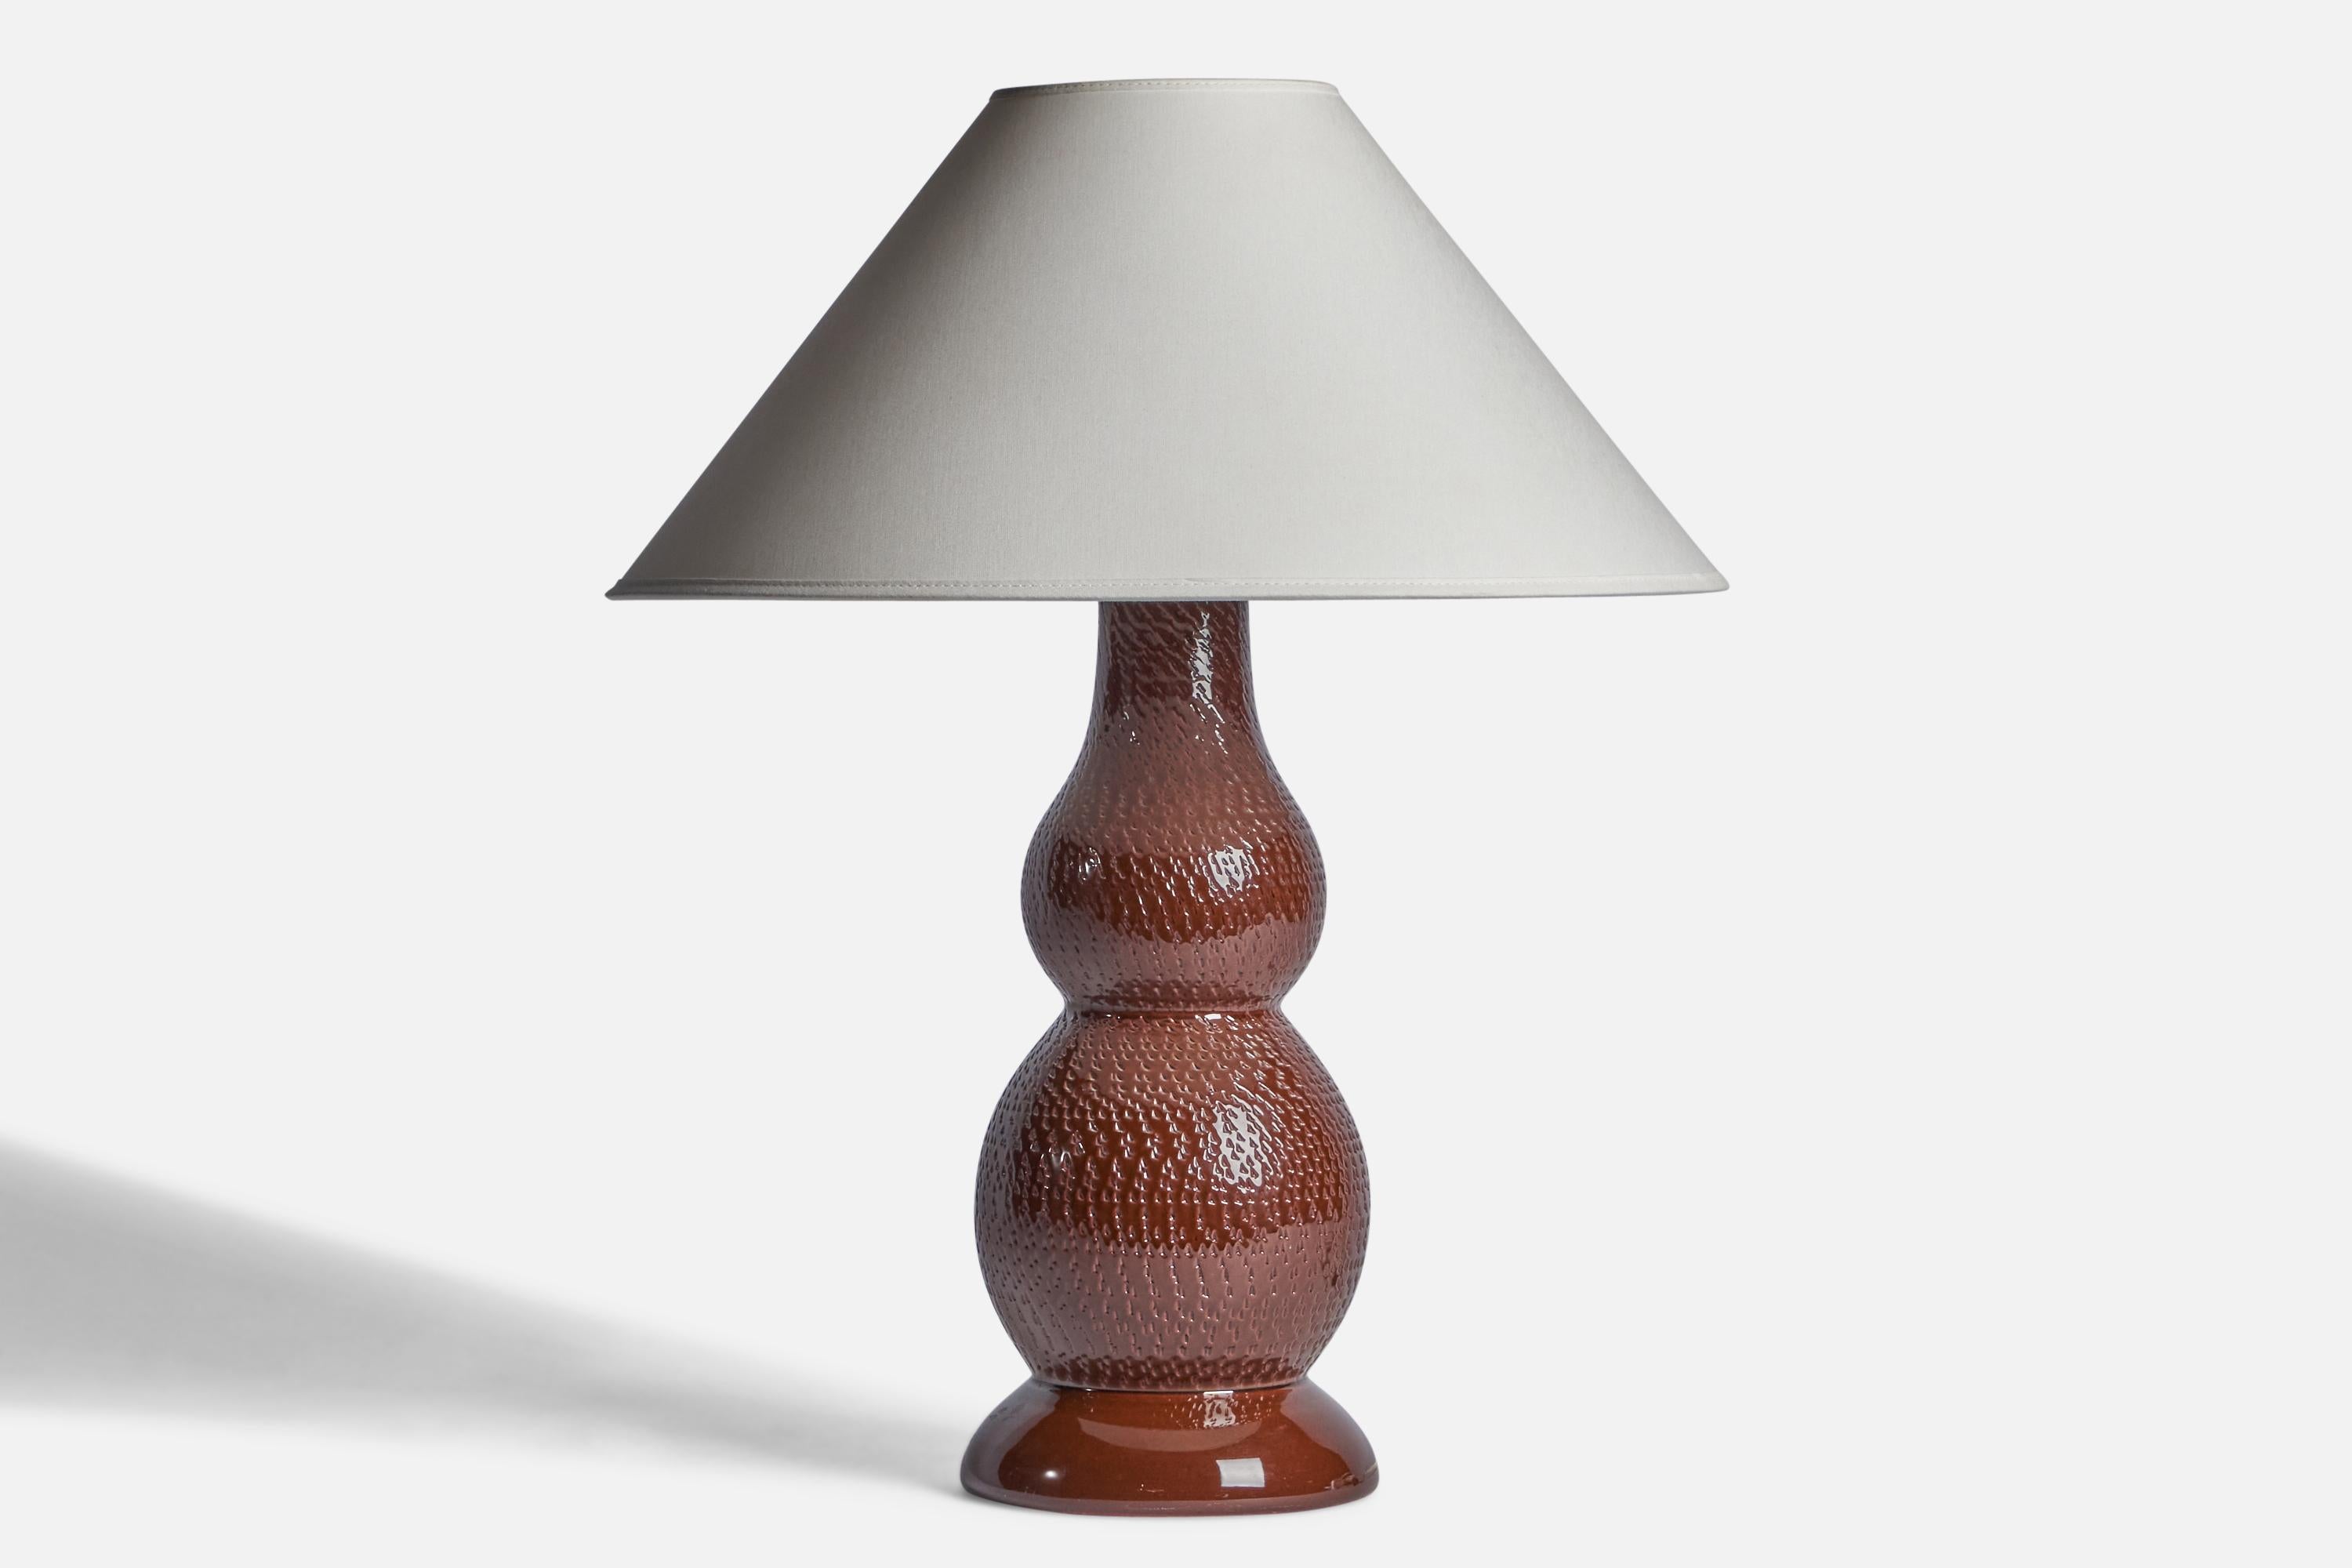 Tischlampe aus braun glasiertem, geritztem Steinzeug, entworfen von Mats Birgersson und hergestellt von Töreboda Keramik, Schweden, ca. 1960er Jahre.

Abmessungen der Lampe (Zoll): 15,75